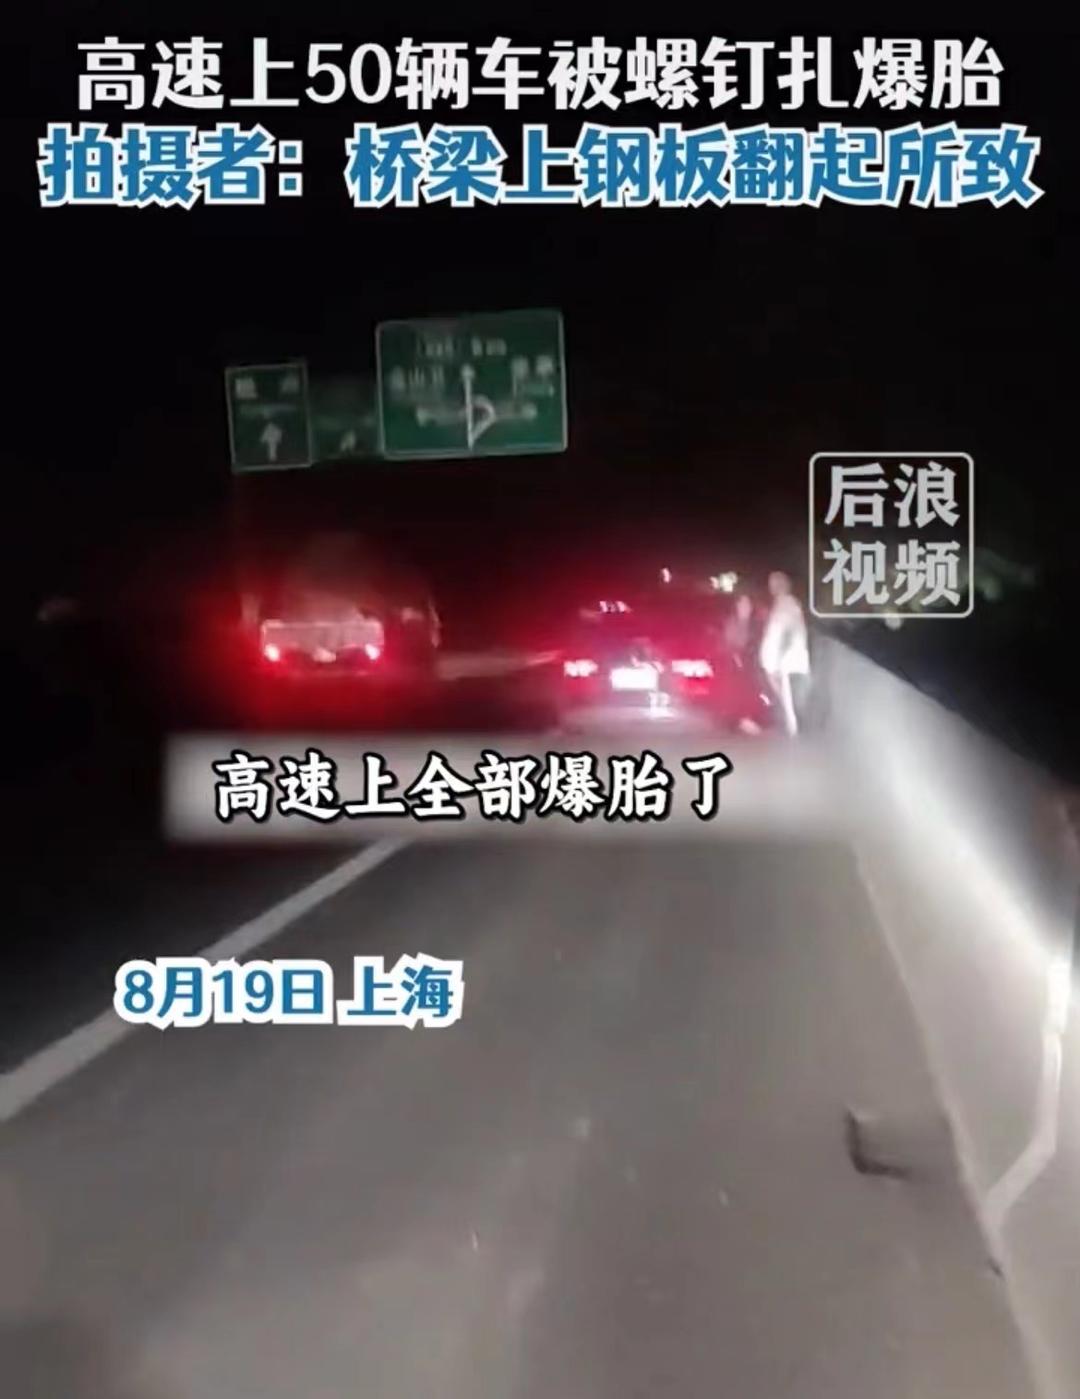 ▲上海一高速路上车辆被螺钉扎爆胎